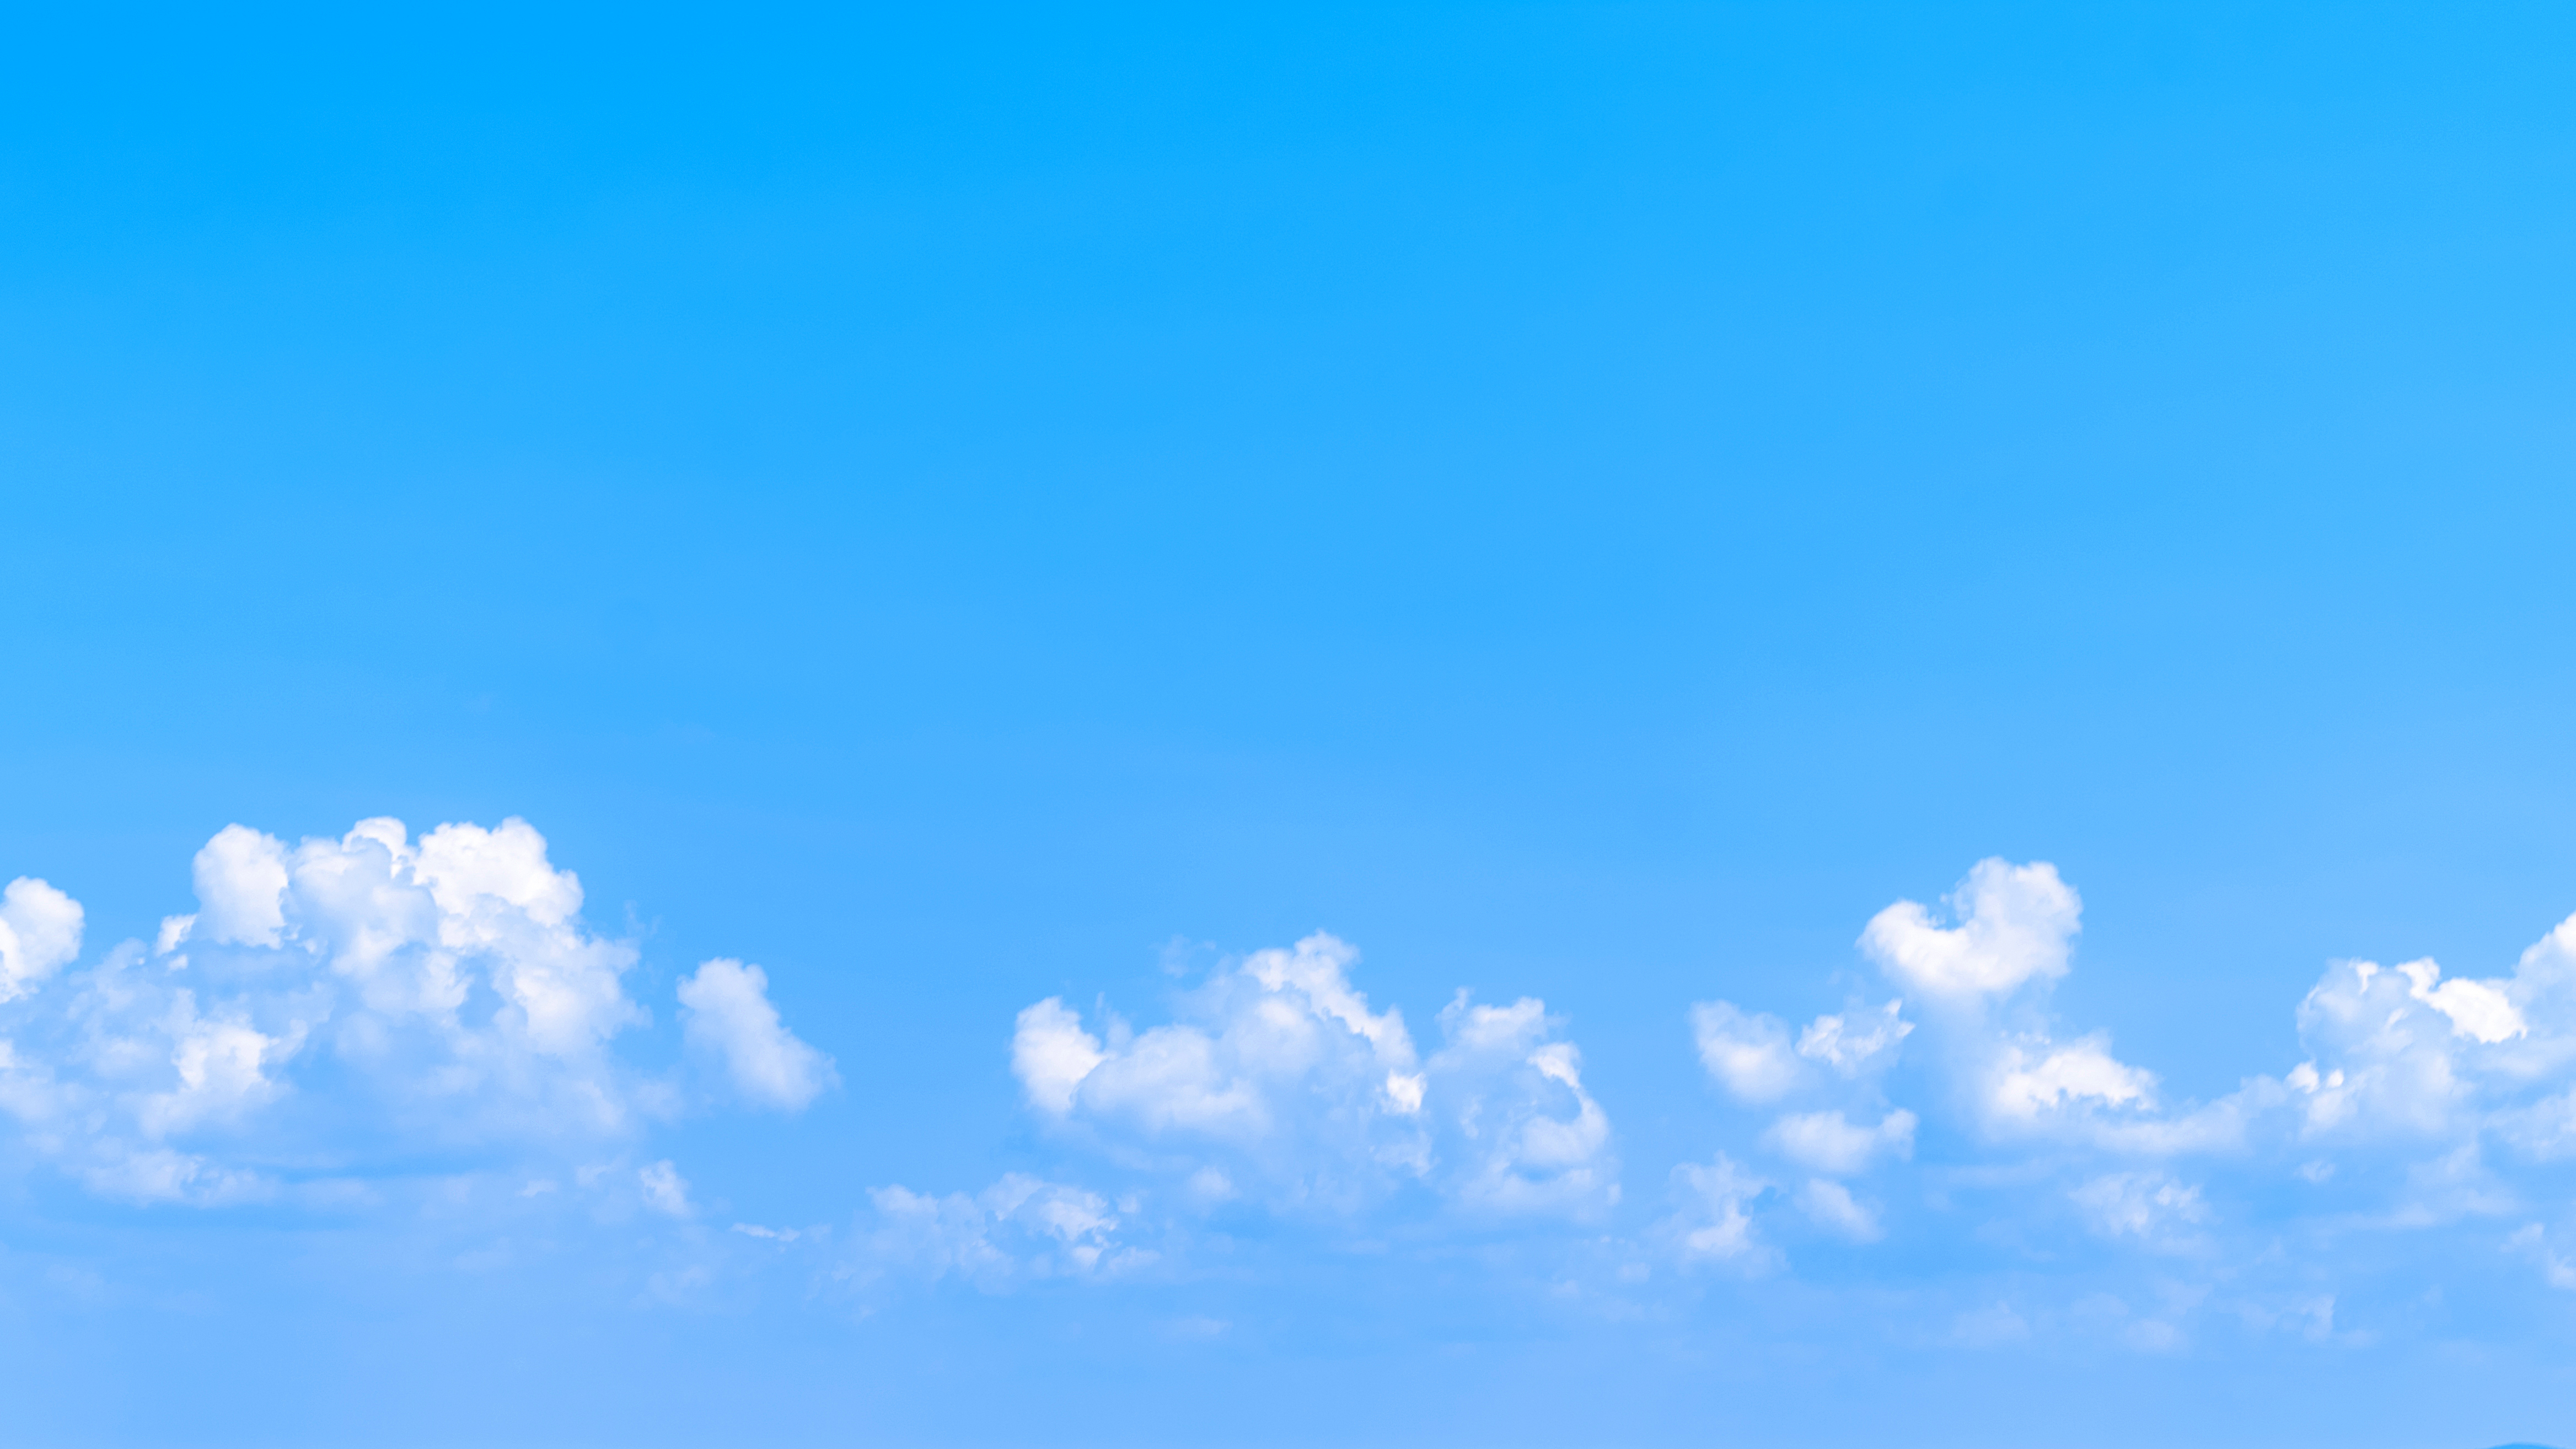 Bầu trời xanh là một chủ đề phổ biến trong nhiếp ảnh đẹp. Tìm kiếm và khám phá các hình ảnh bầu trời xanh độc đáo và phong phú để sử dụng trong thiết kế của bạn.